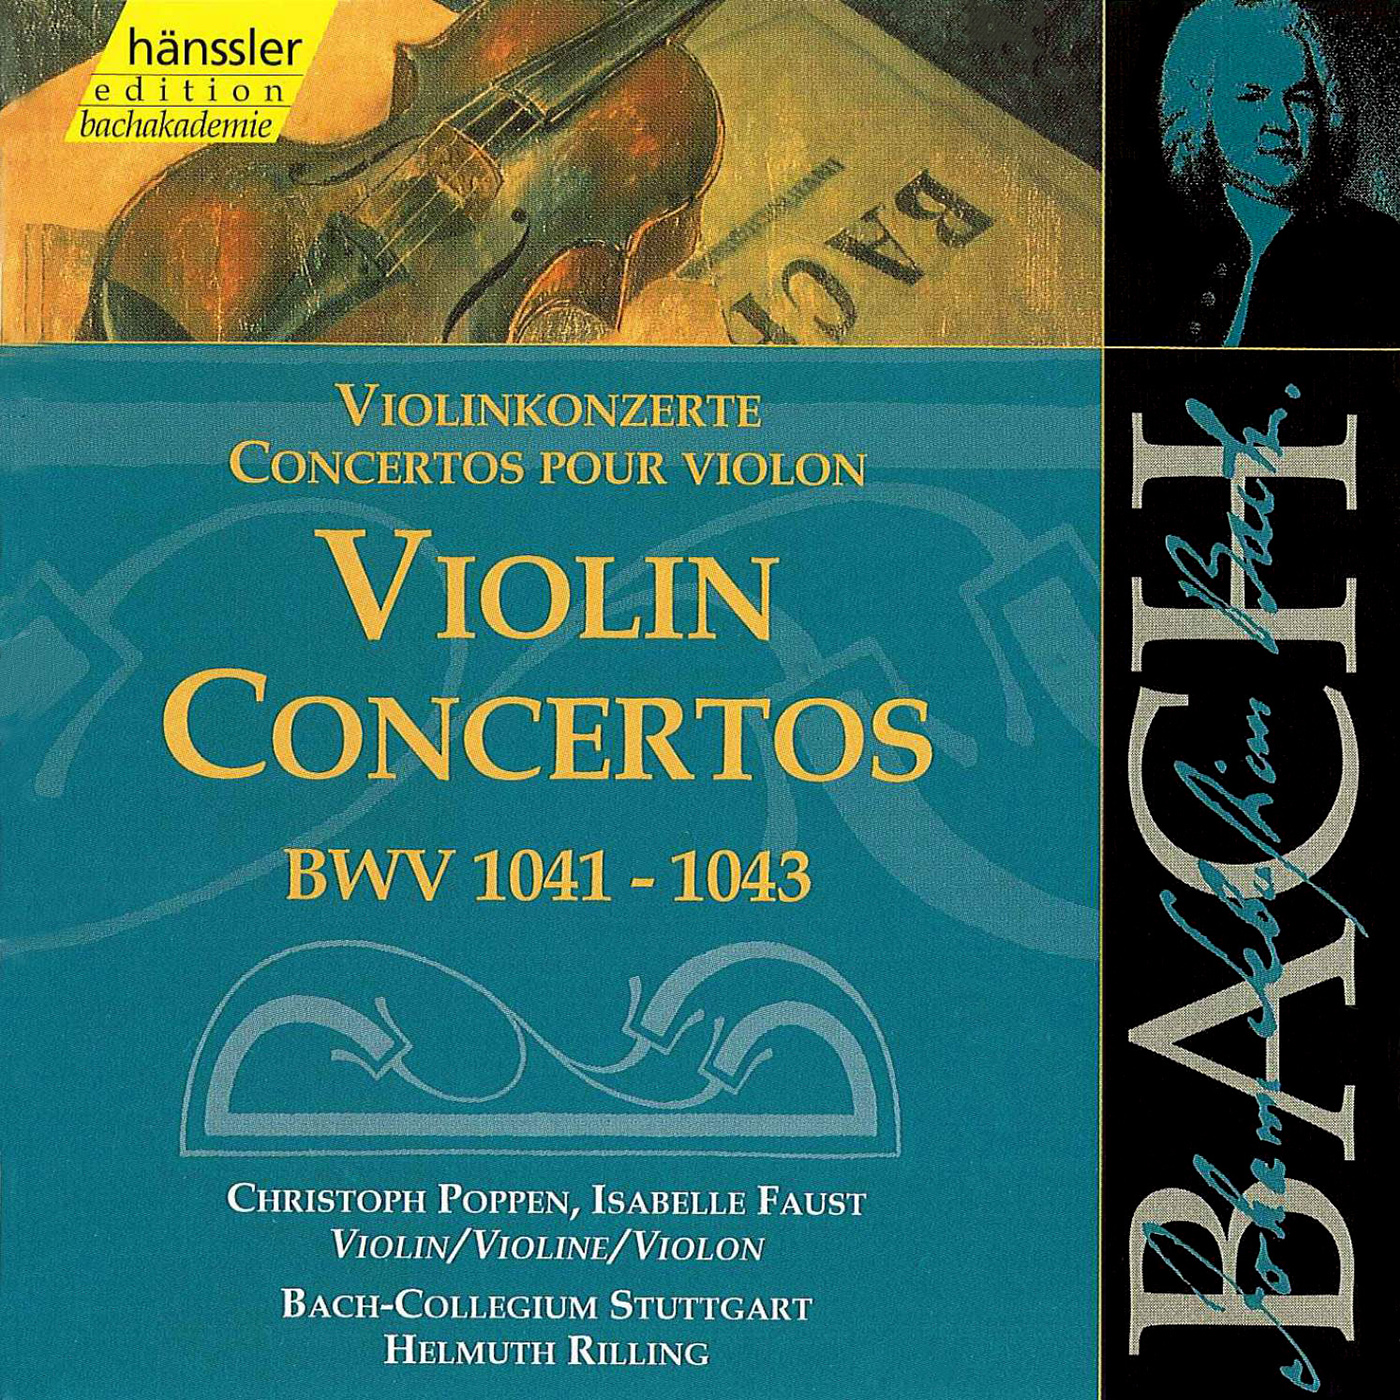 Violin Concerto in E Major, BWV 1042:I. Allegro